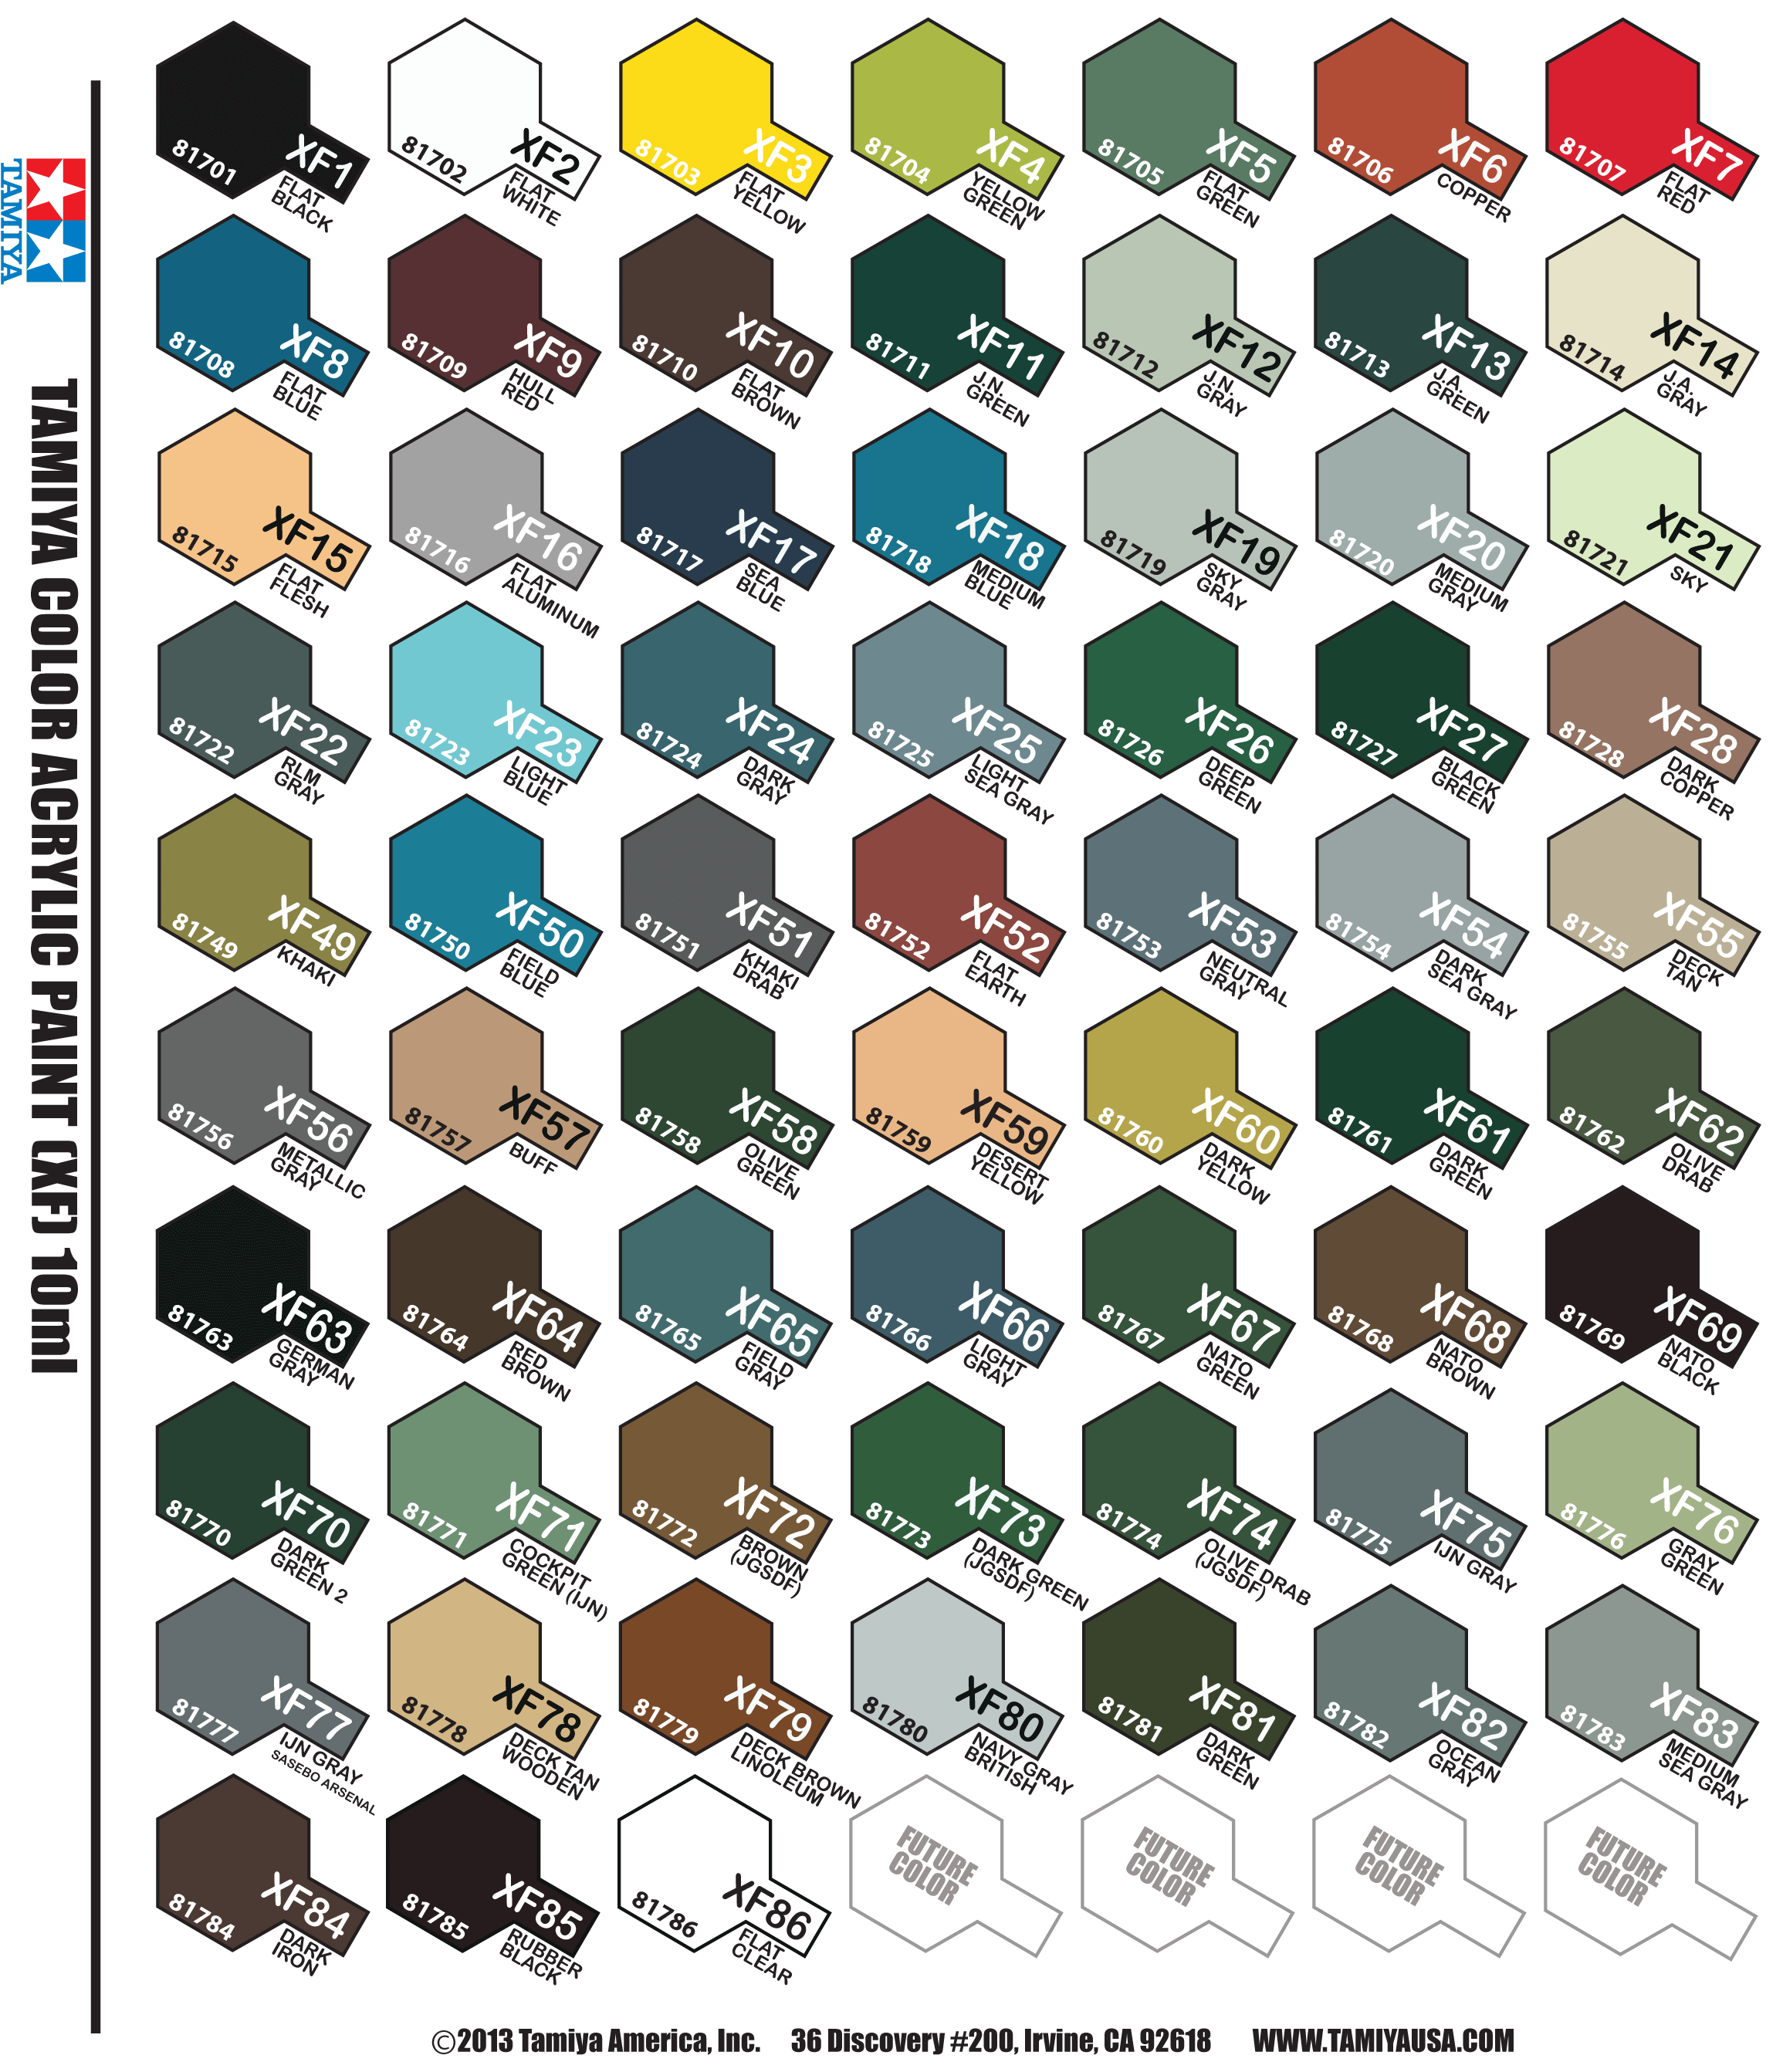 Tamiya As Color Chart